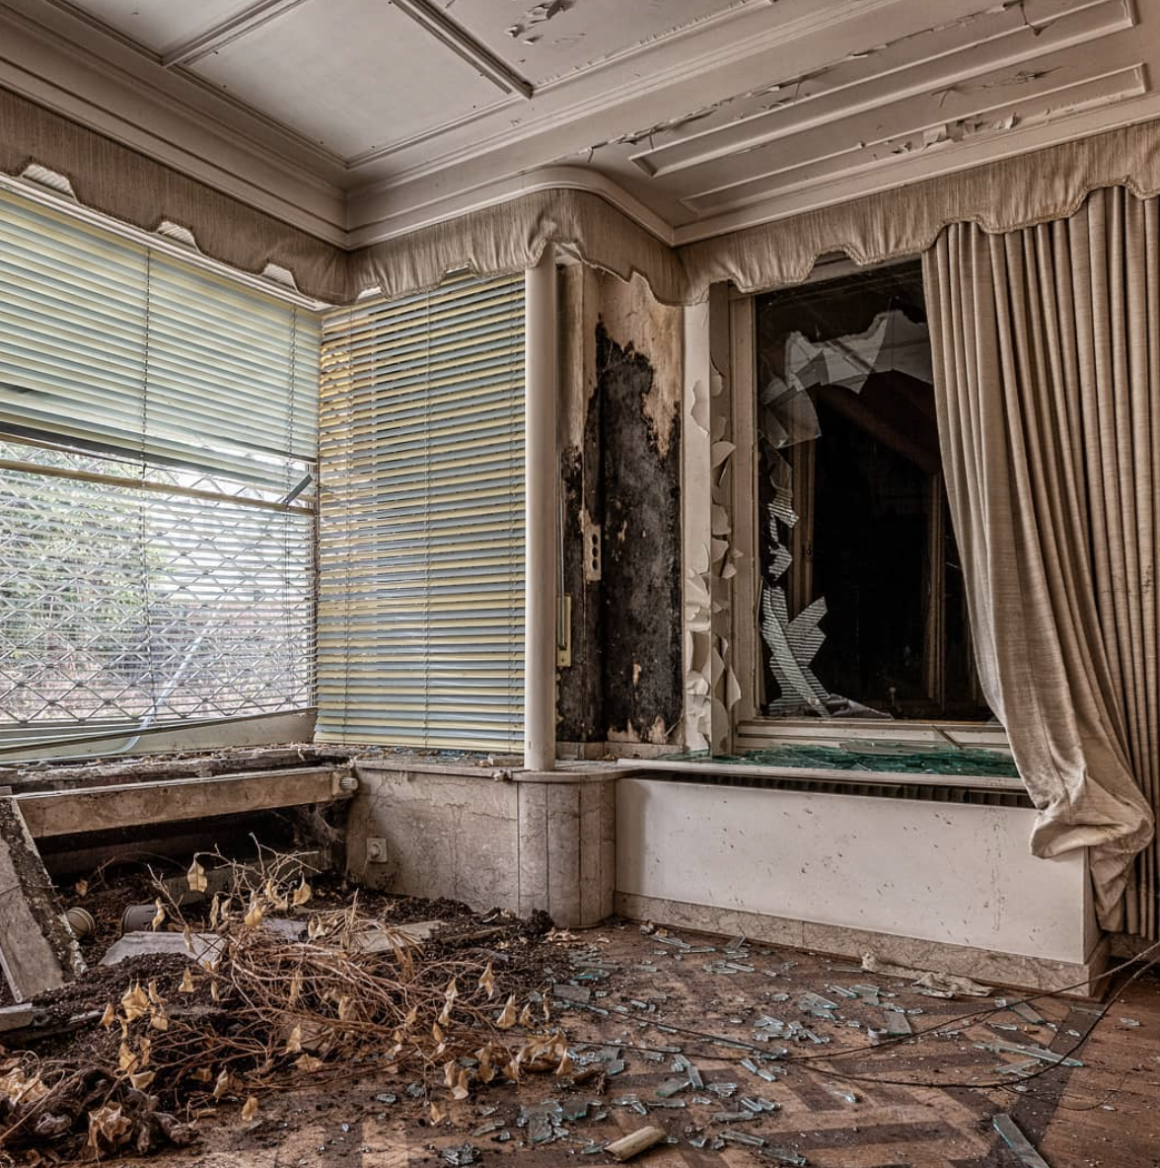 photographie d'un intérieur abandonné prise par revierstrolch